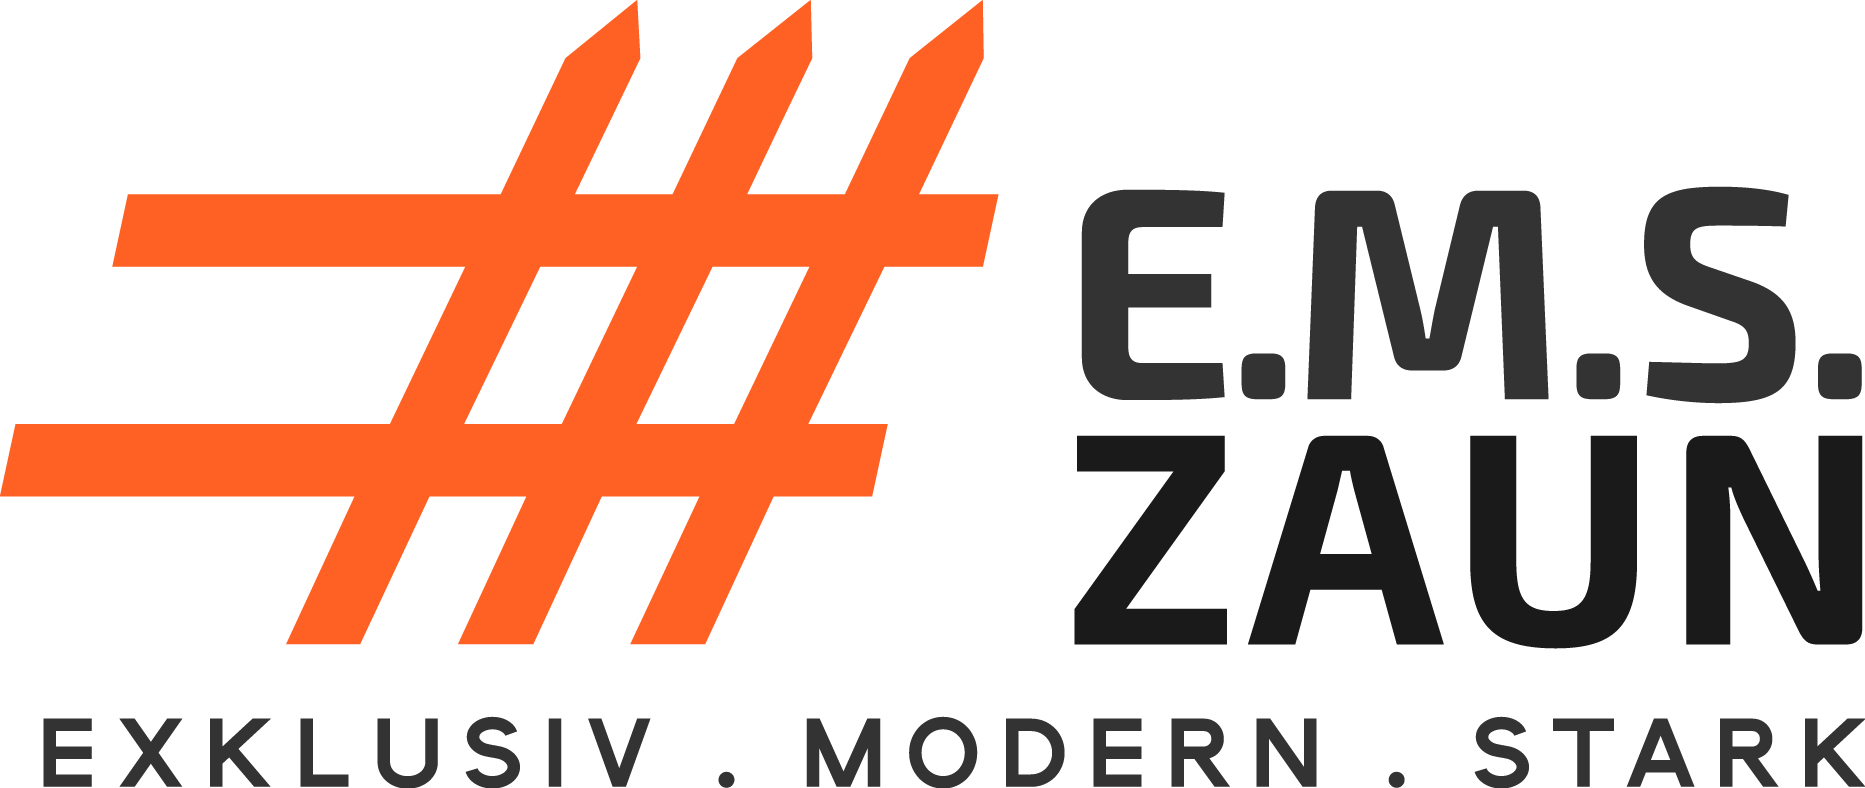 EMSZaun-Logo1-4c.jpg